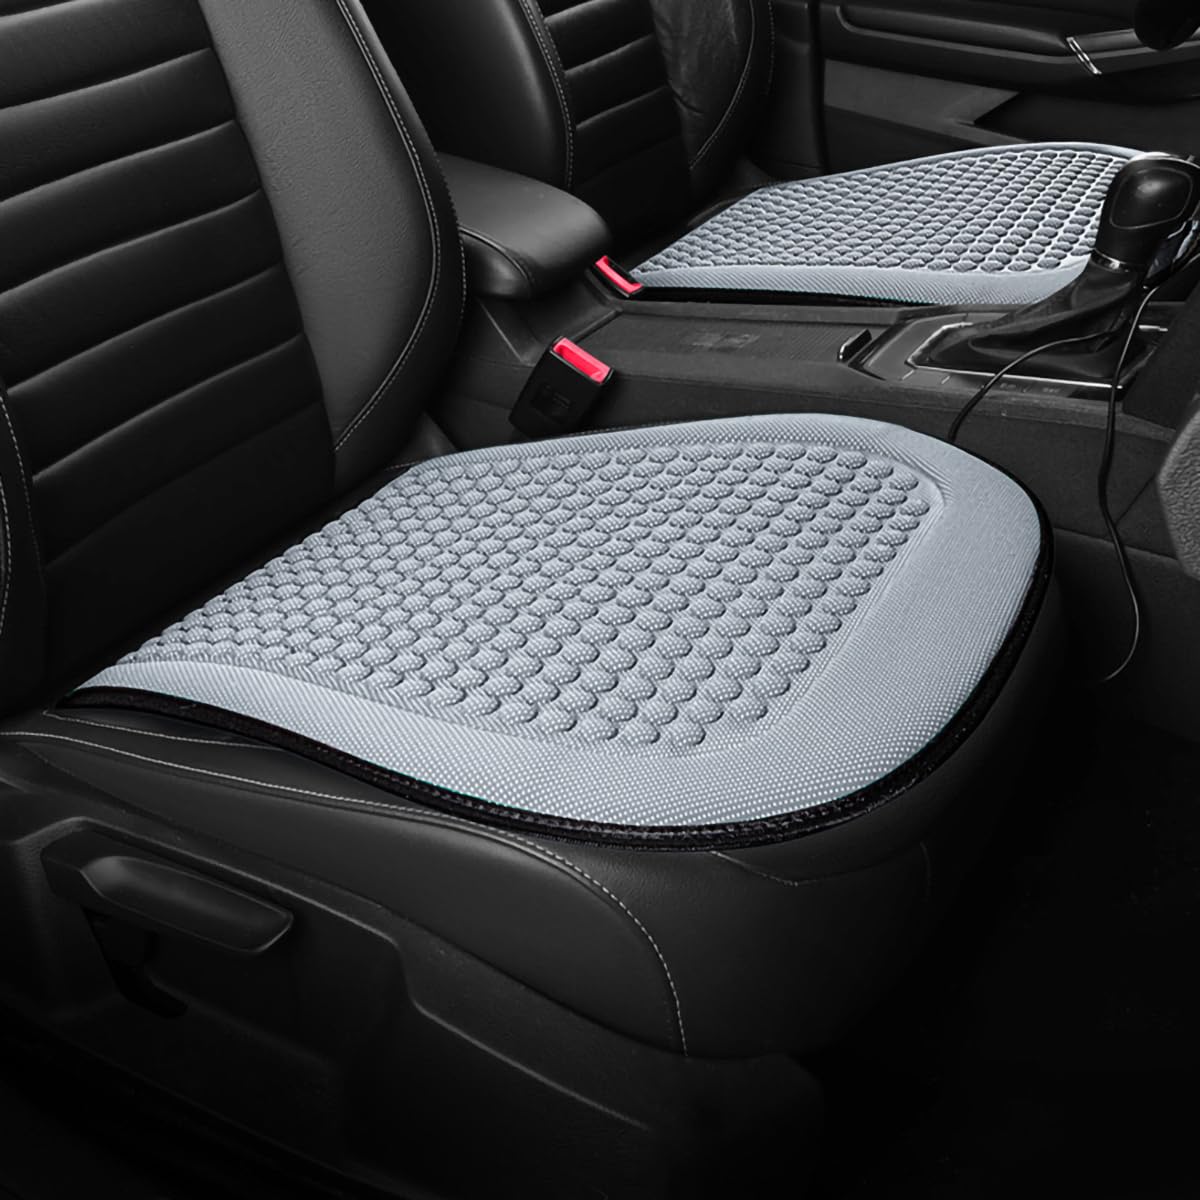 Spulhc Autositzbezug für Nissan March 2010-2017 2018 2019, kühles Sitzkissen aus Eisseide, kühlendes/atmungsaktives Kissen,A-gray-2 Cushion von Spulhc